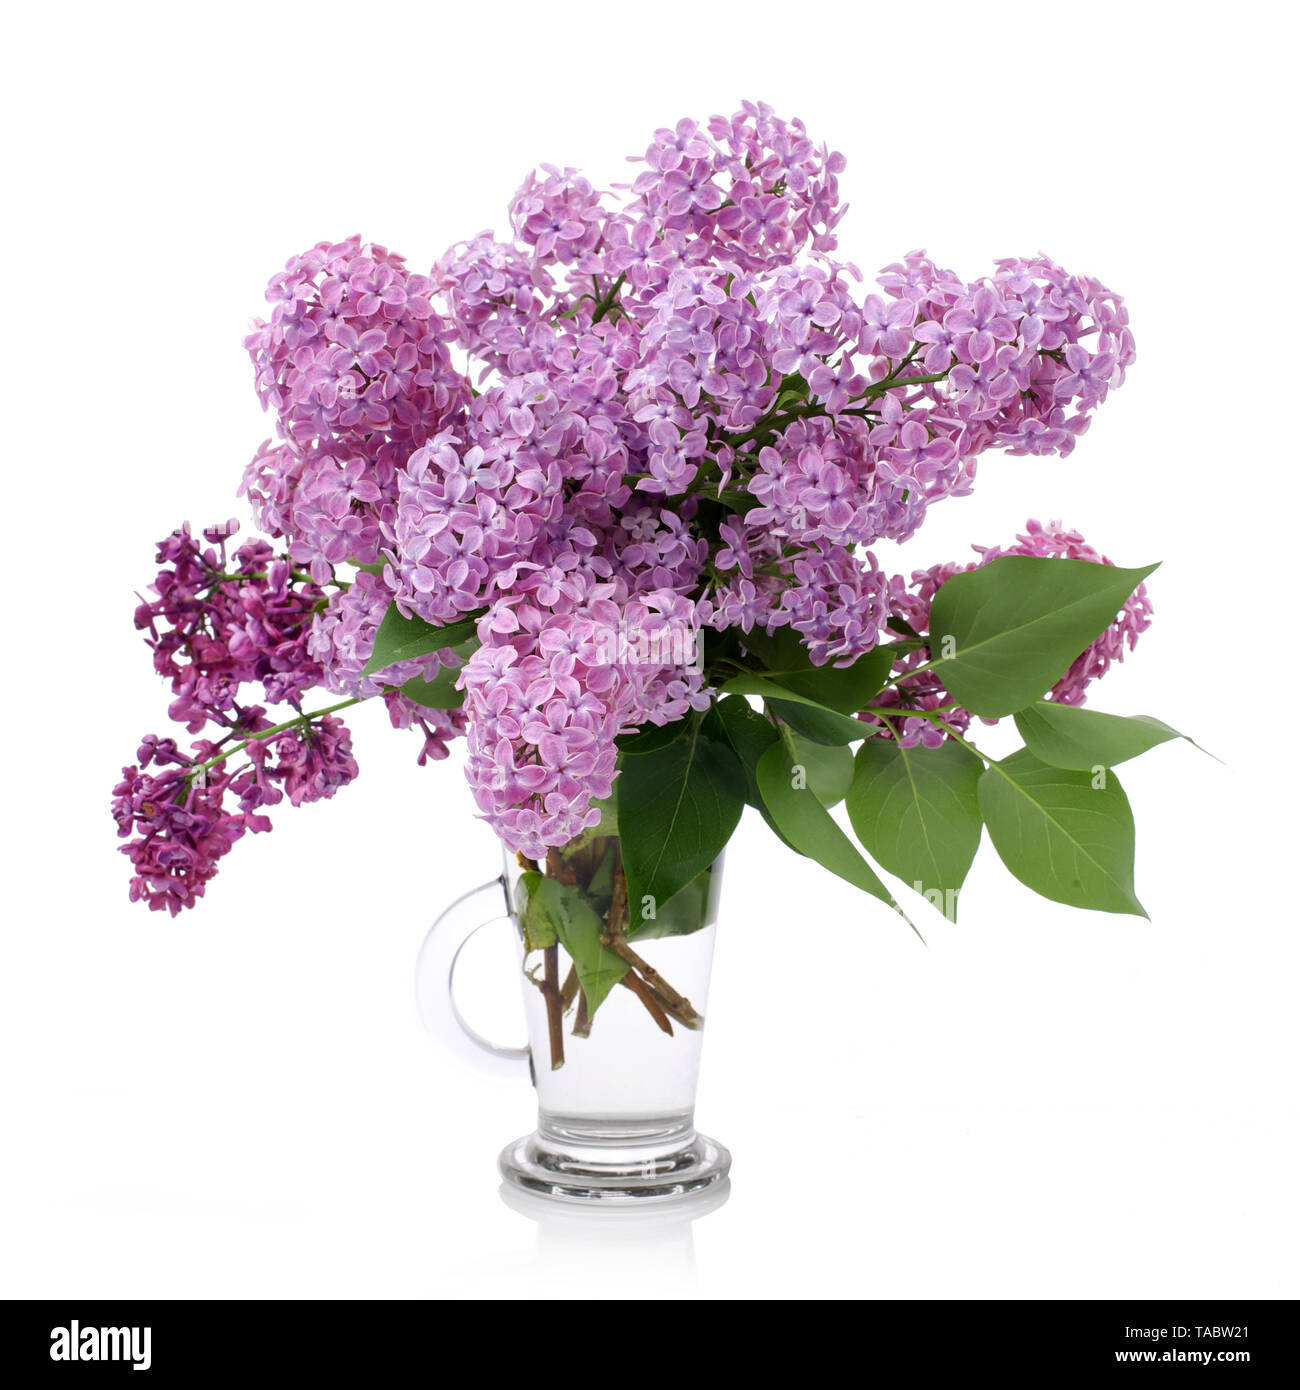 Ramo de lilas en un vaso de vidrio aislado en blanco. Rama con flores de color lila. Foto de stock